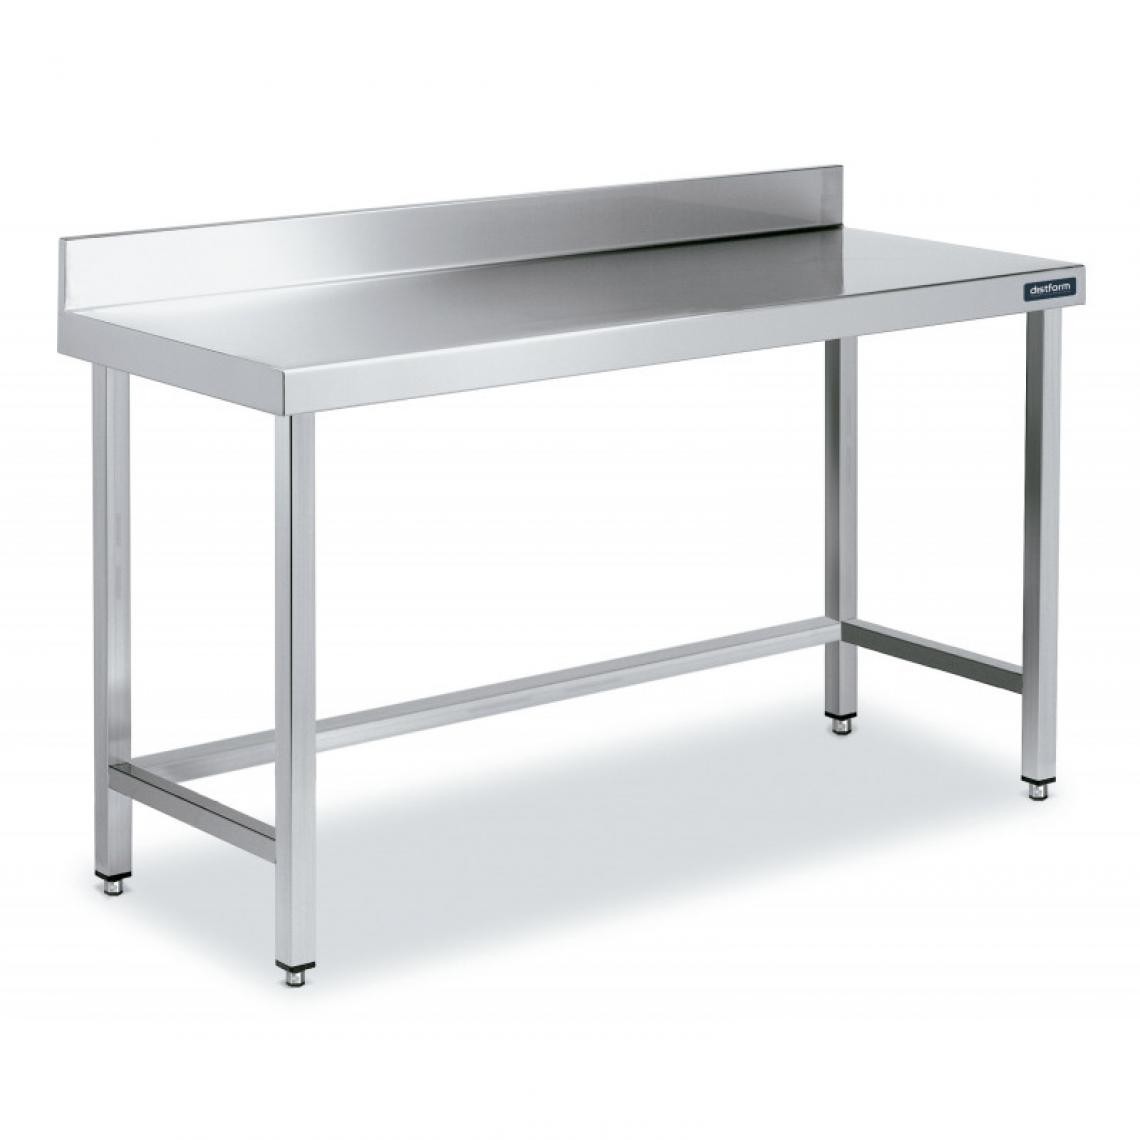 DISTFORM - Table Inox de Travail avec Dosseret Gamme 800 - Distform - Acier inoxydable2200x800 - Tables à manger